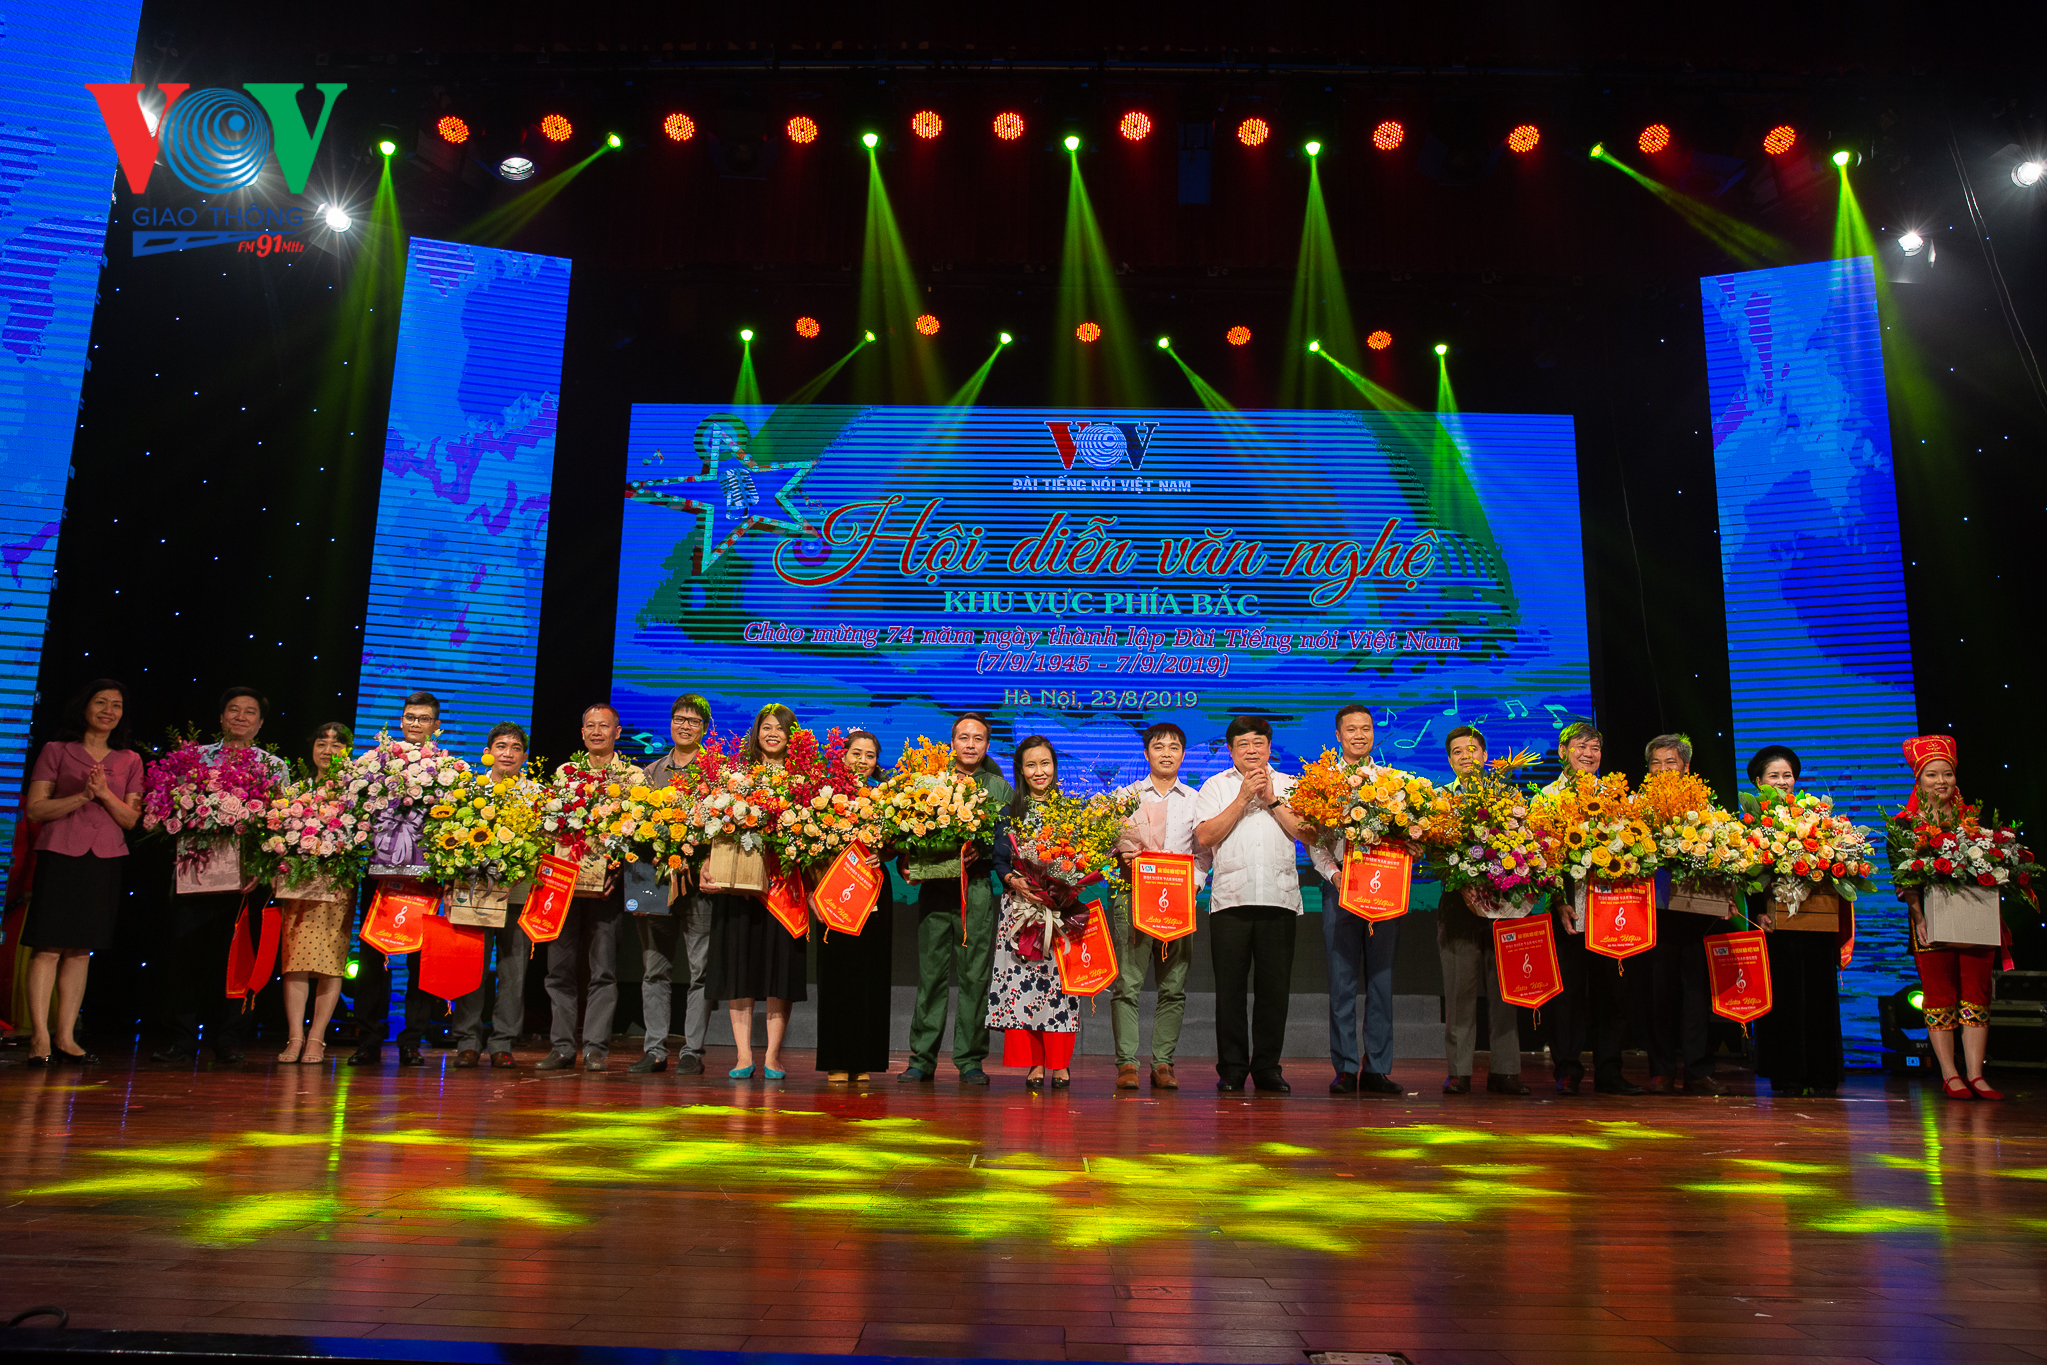 VOV Giao thông dành giải đặc biệt Hội diễn văn nghệ VOV khu vực phía bắ